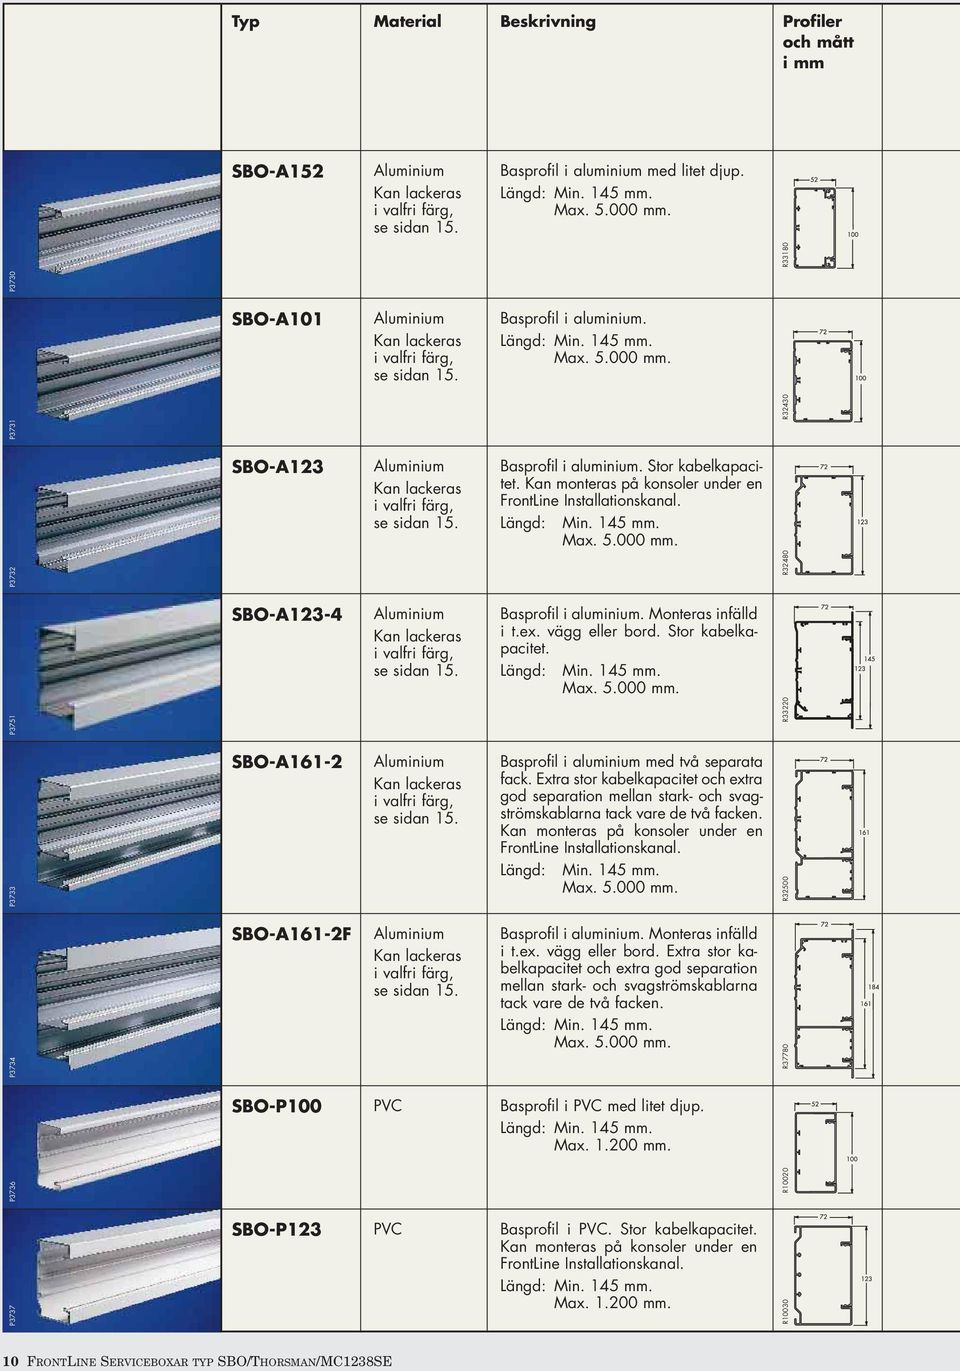 R32430 SBO-A123 Aluminium Kan lackeras i valfri färg, se sidan 15. Basprofil i aluminium. Stor kabelkapacitet. Kan monteras på konsoler under en FrontLine Installationskanal. Längd: Min. 145 mm. Max.